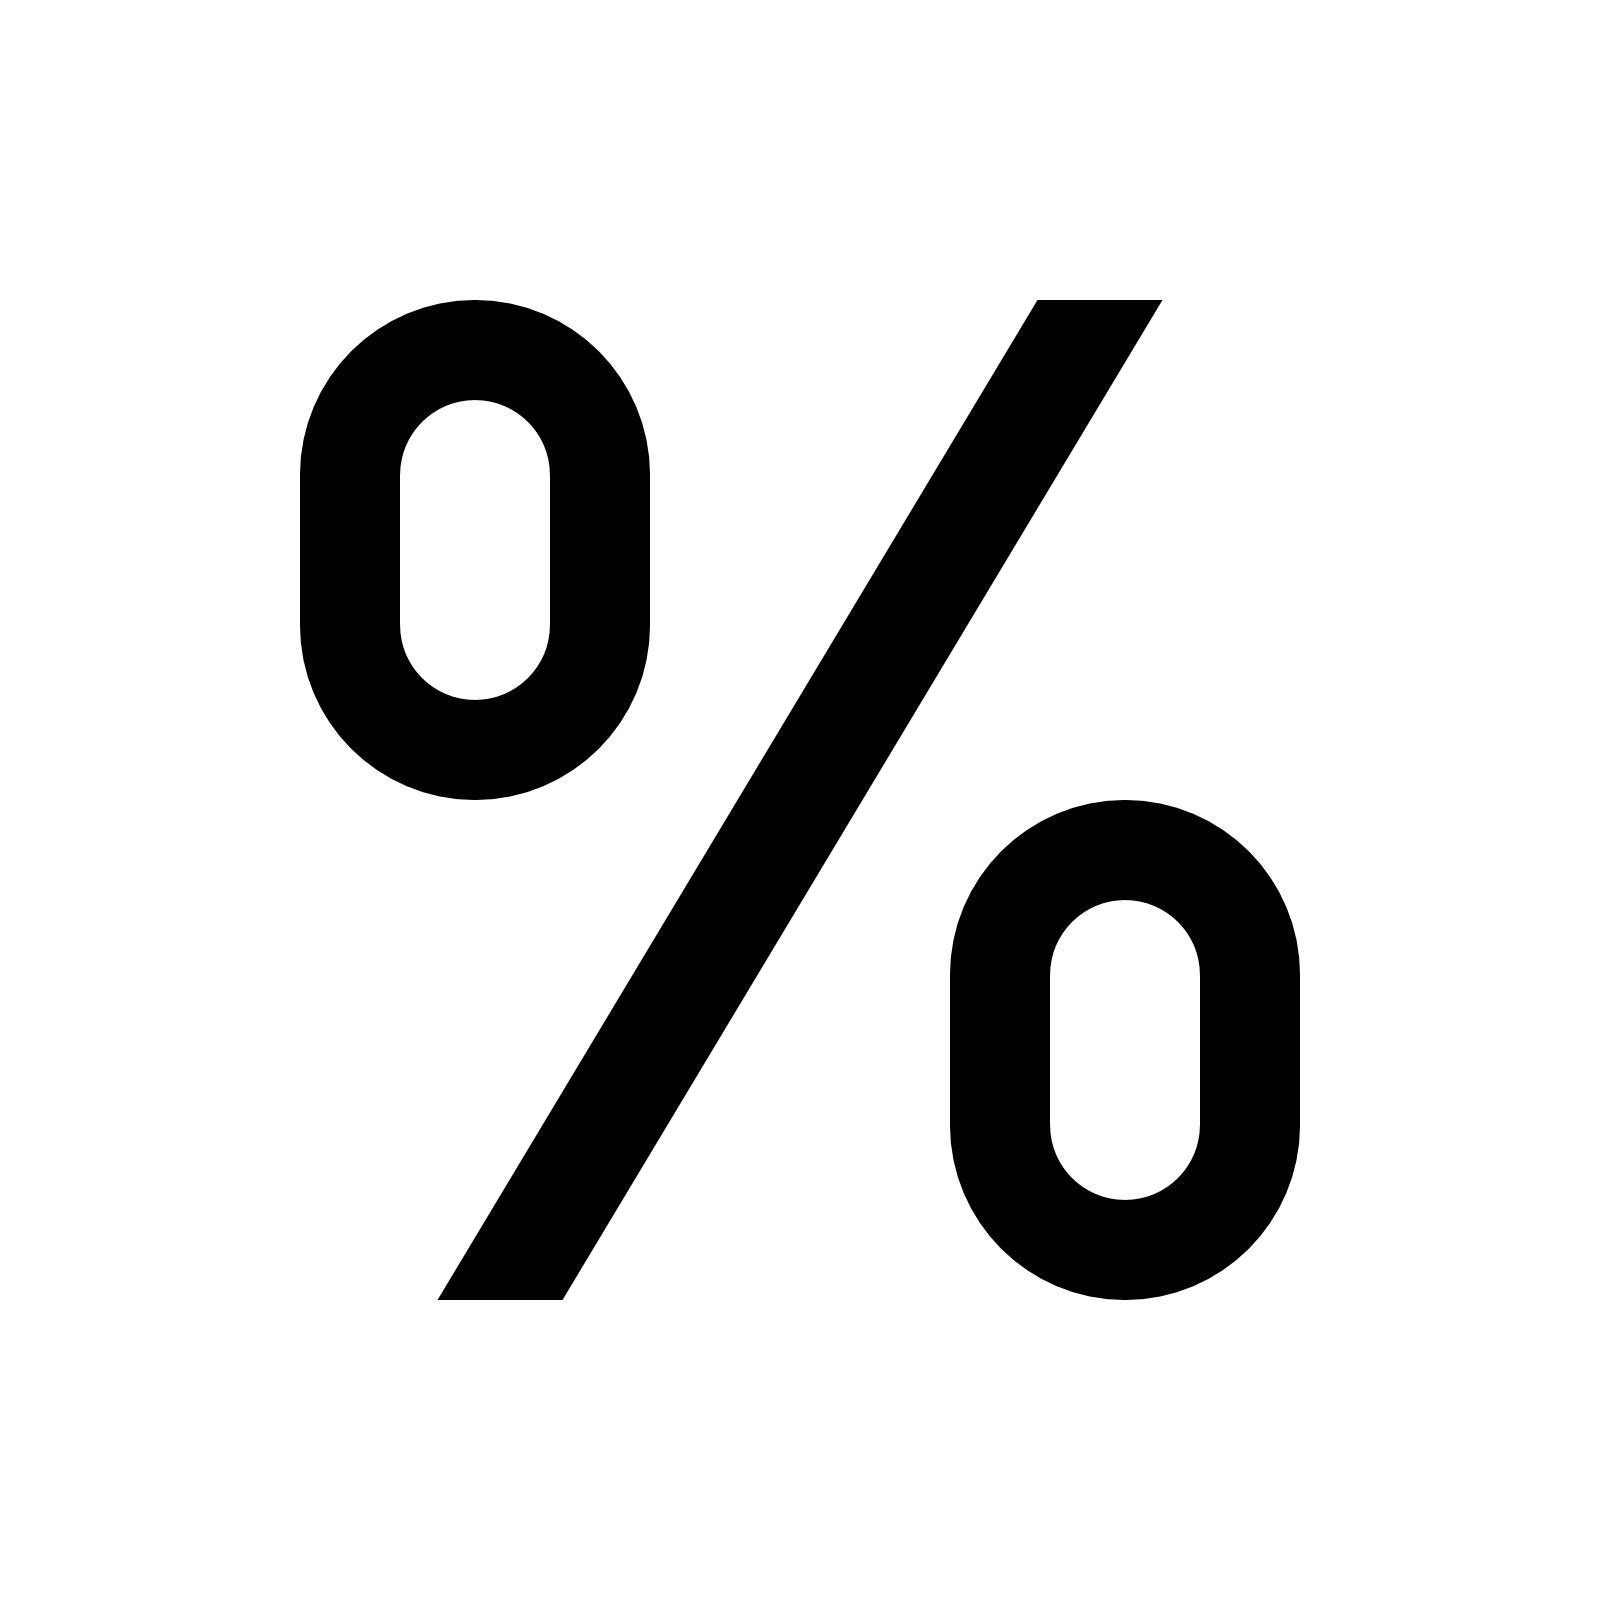 Segno di percentuale